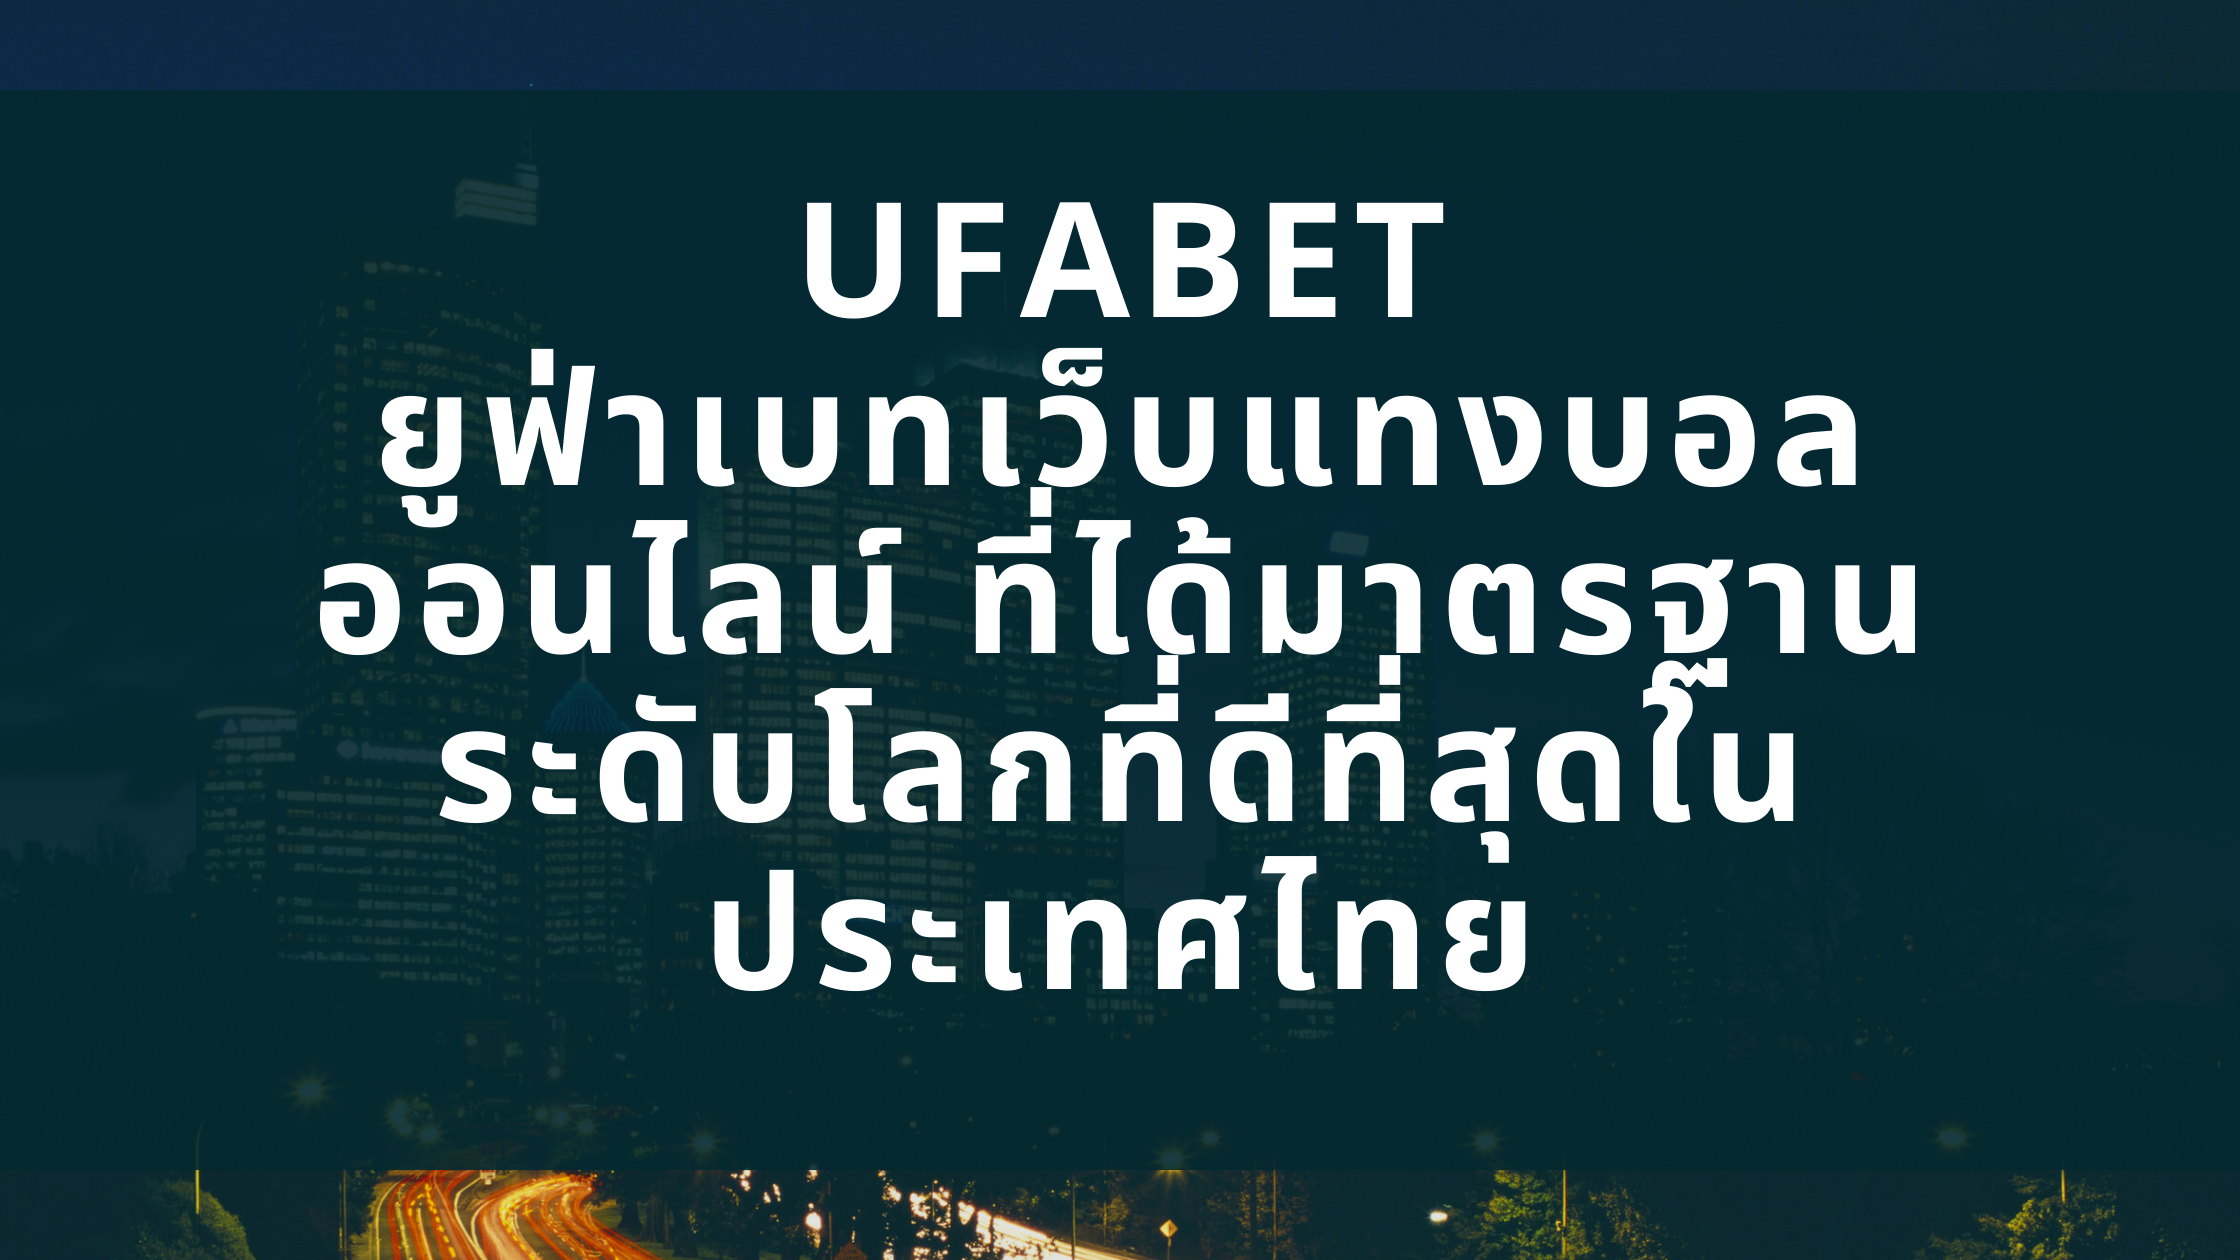 UFABET ยูฟ่าเบทเว็บแทงบอลออนไลน์ ที่ได้มาตรฐานระดับโลกที่ดีที่สุดในประเทศไทย